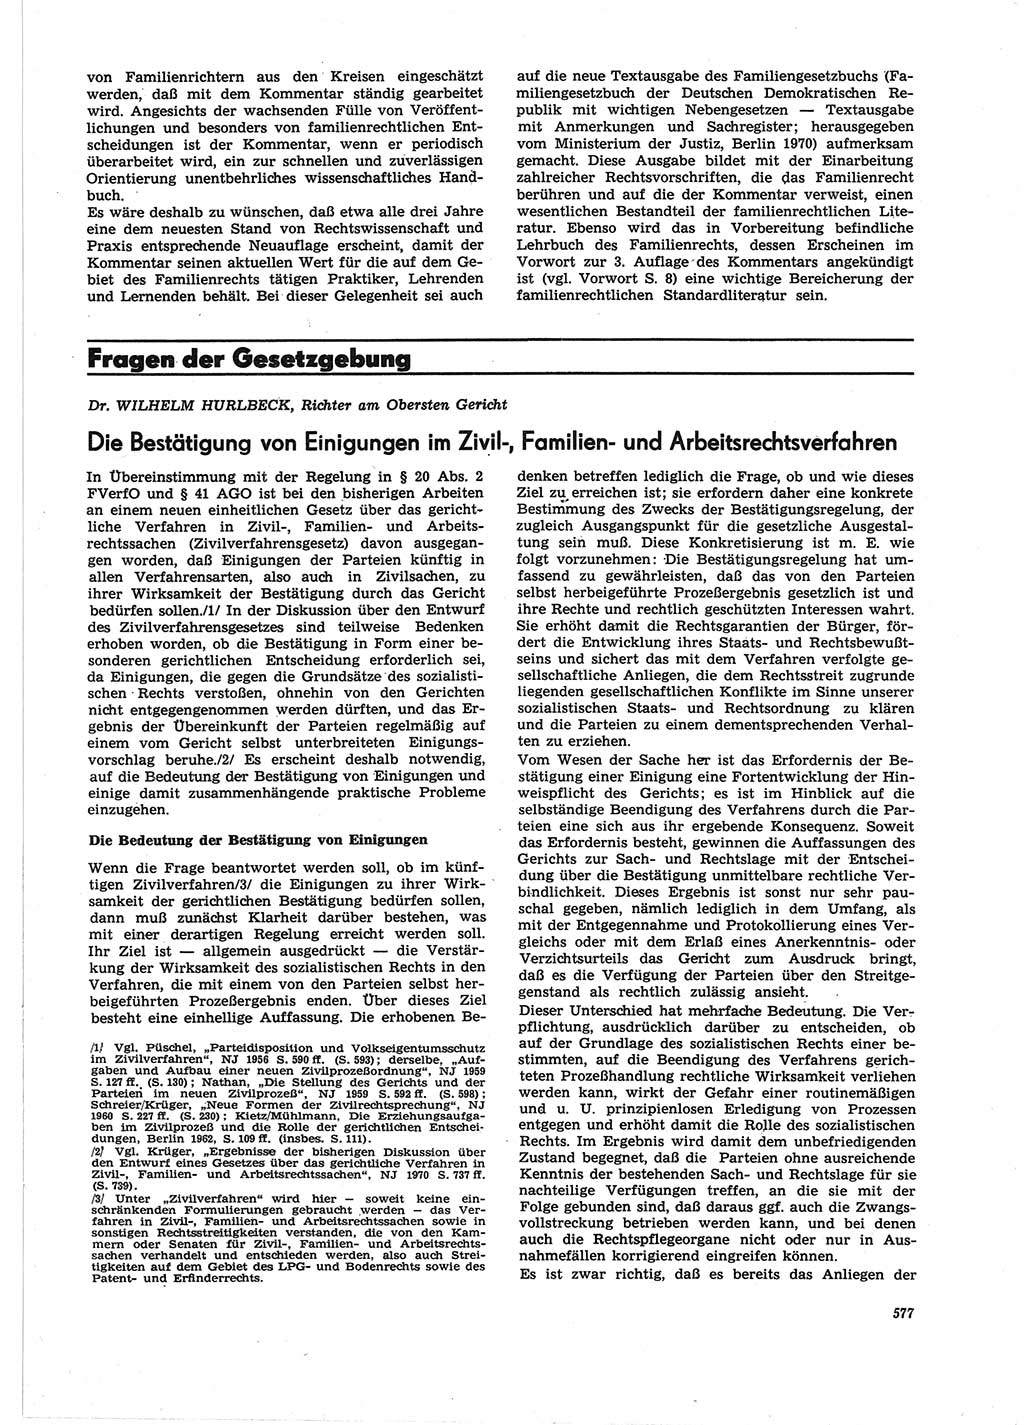 Neue Justiz (NJ), Zeitschrift für Recht und Rechtswissenschaft [Deutsche Demokratische Republik (DDR)], 25. Jahrgang 1971, Seite 577 (NJ DDR 1971, S. 577)